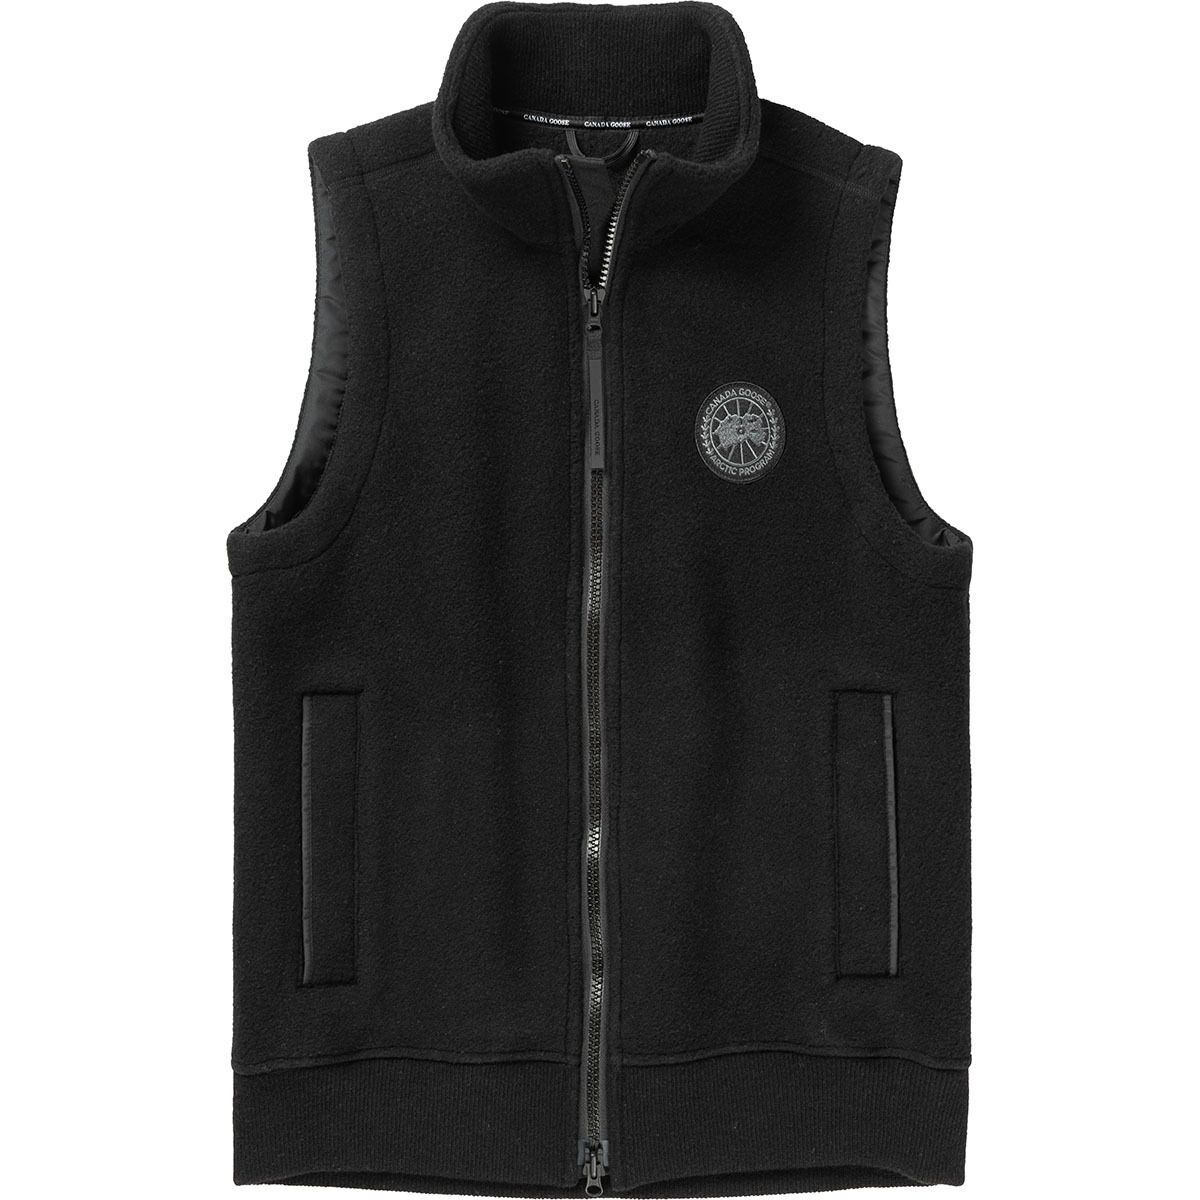 Canada Goose Mersey Fleece Vest Black Label - Men's